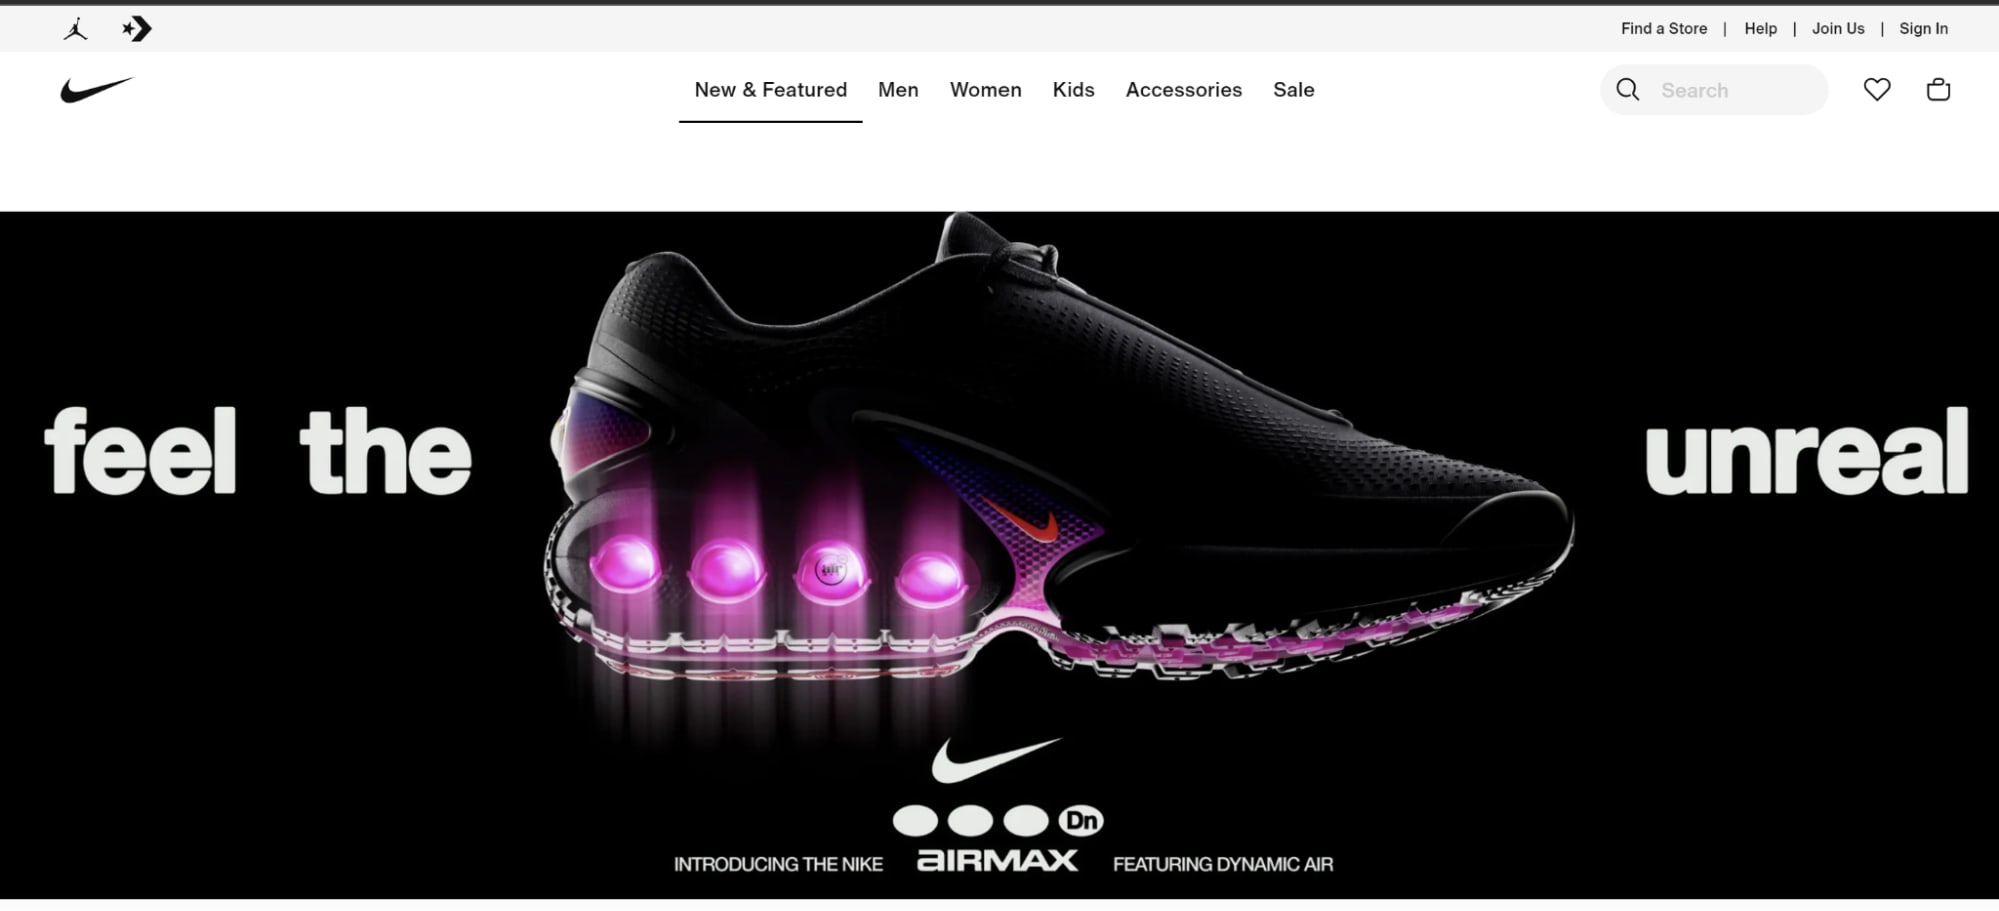 Nike corporate website design